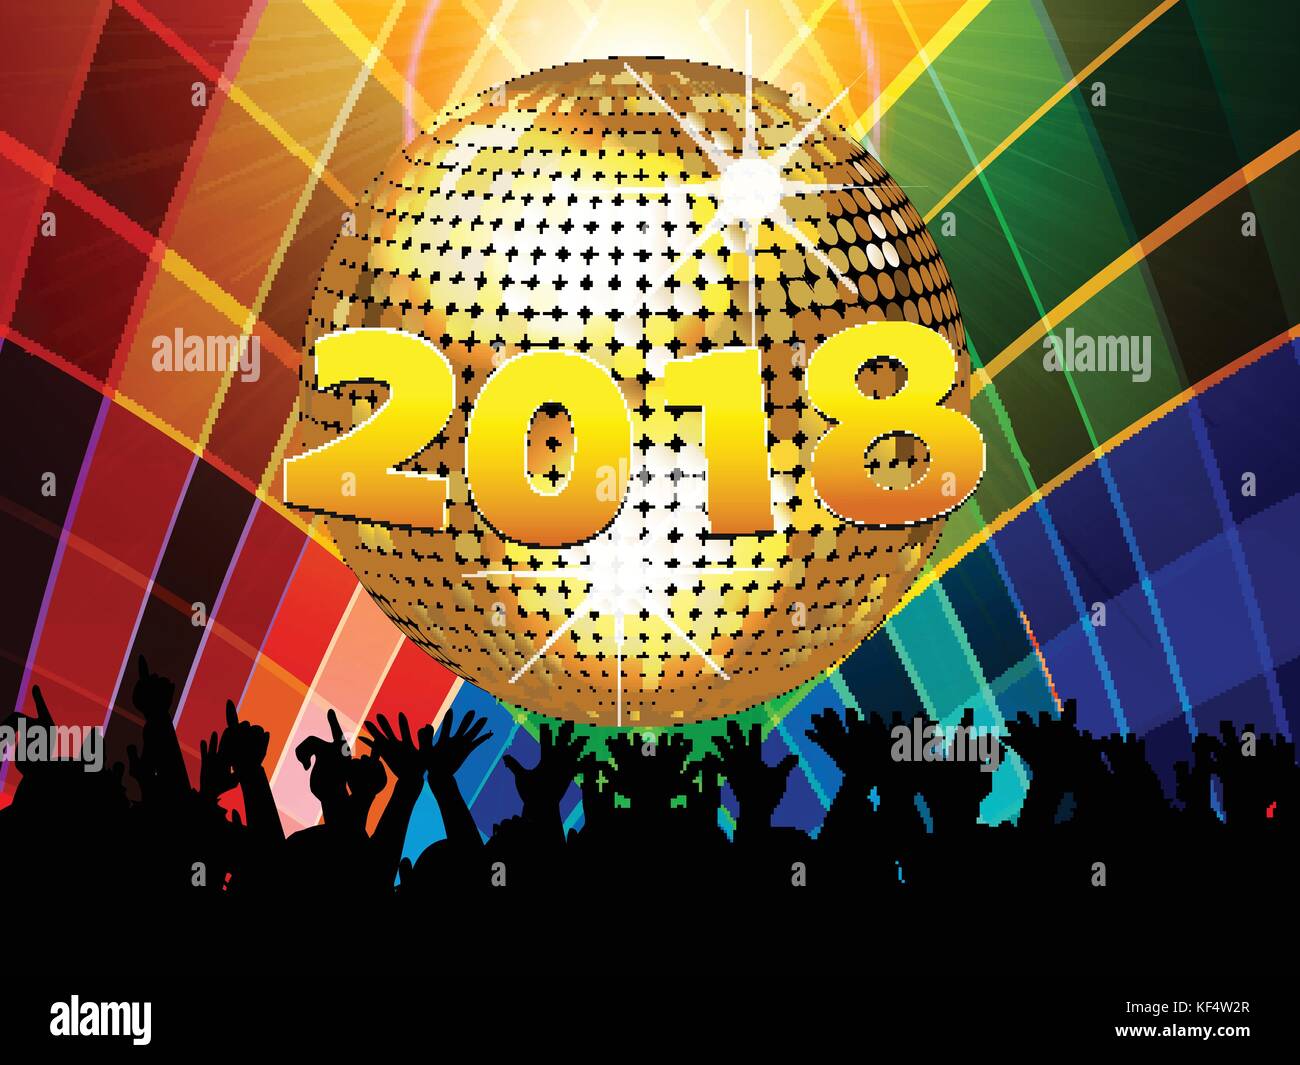 Neue Jahre 20 18 Feier bunten Hintergrund mit Disco ball Menge und 2018 in Zahlen Stock Vektor